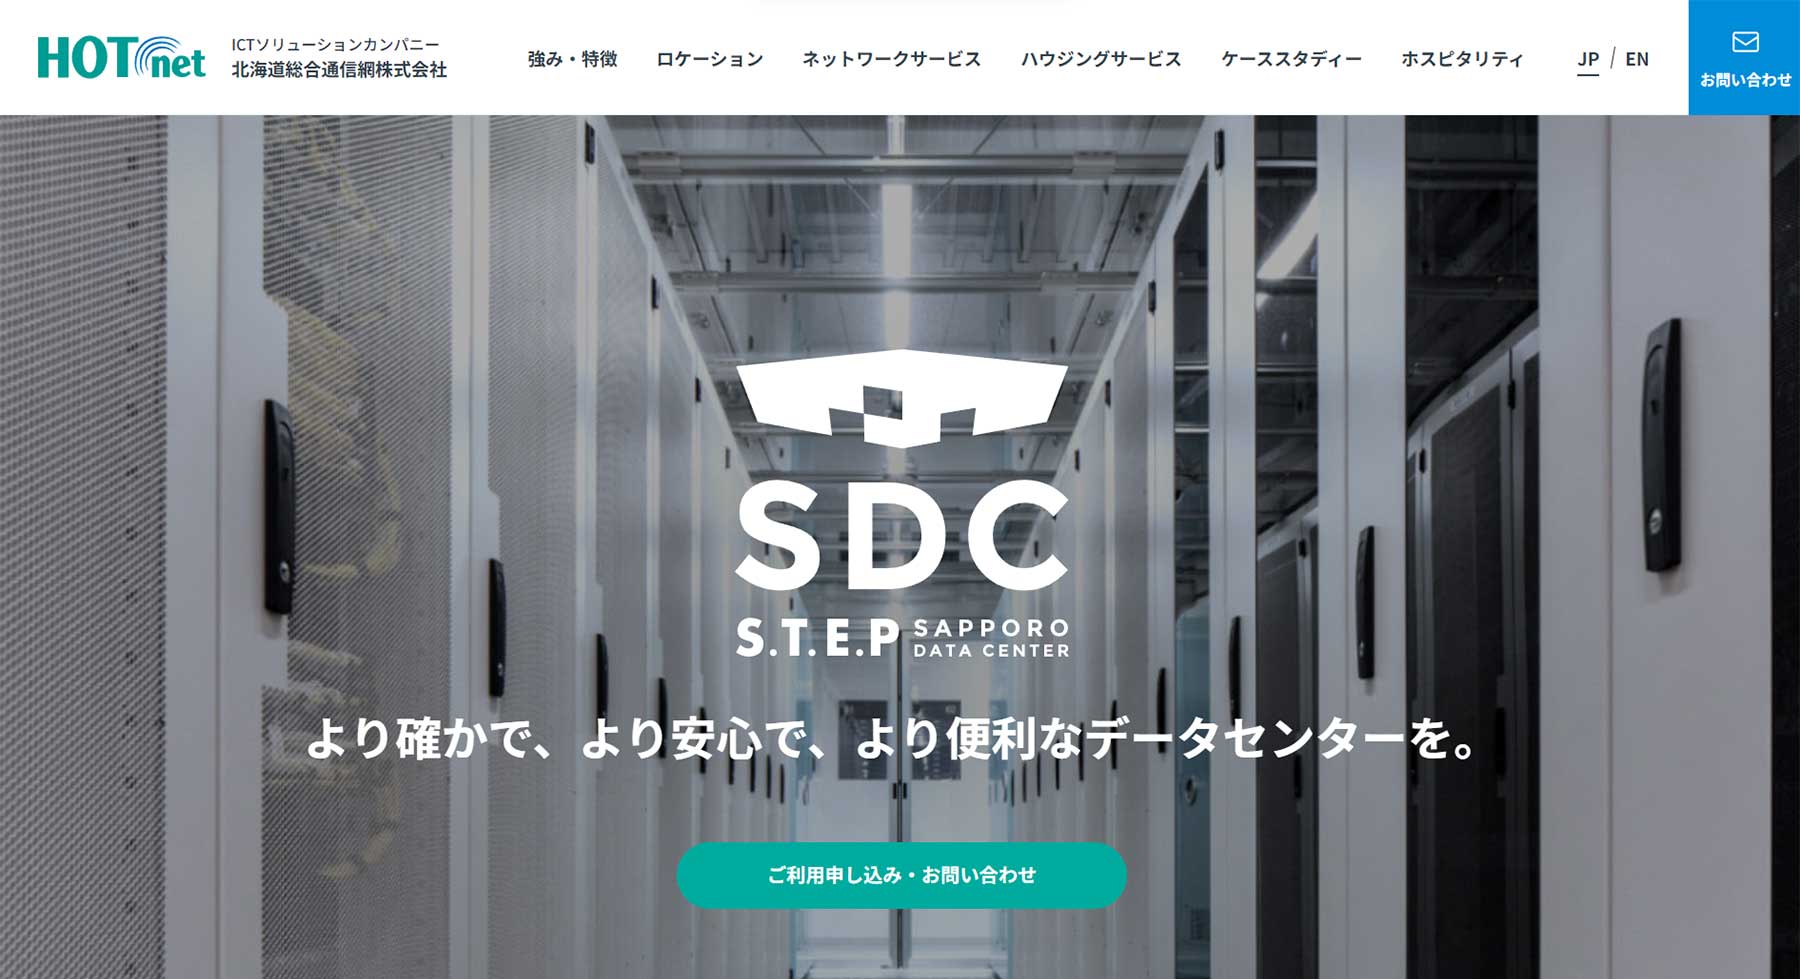 S.T.E.P 札幌データセンター公式Webサイト